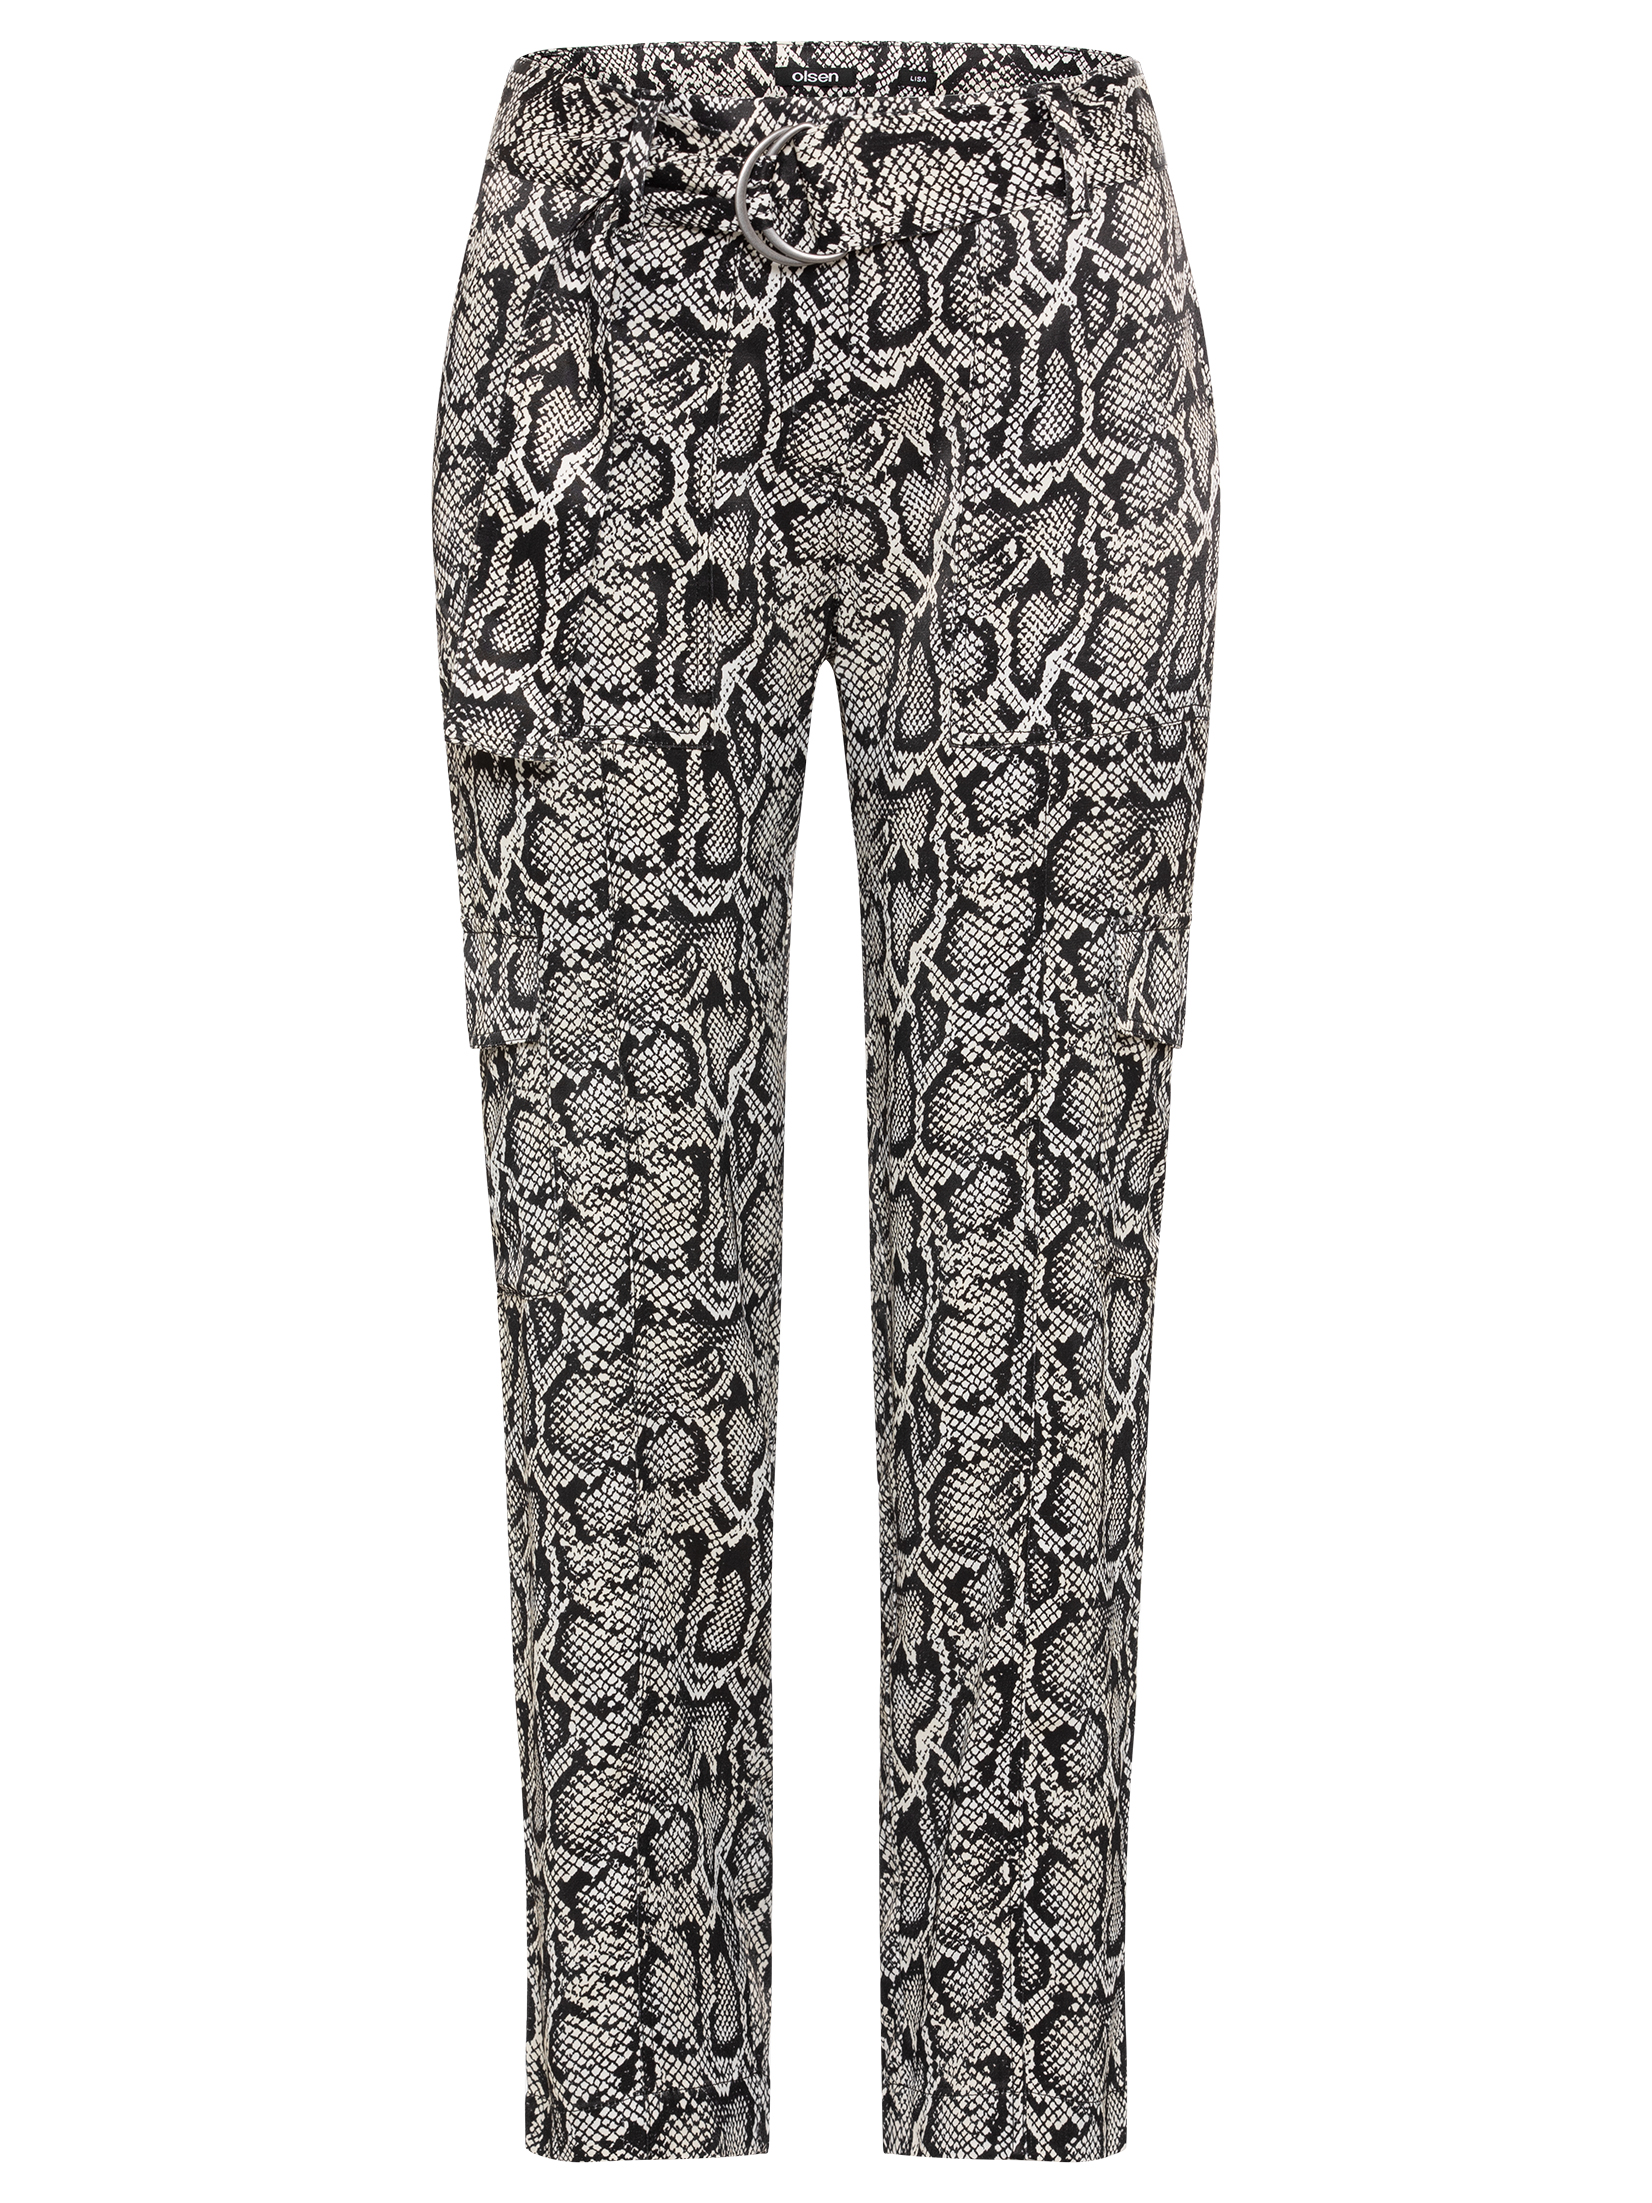 Olsen dámské kalhoty s hadím vzorem 14002184/80000 Černá 34